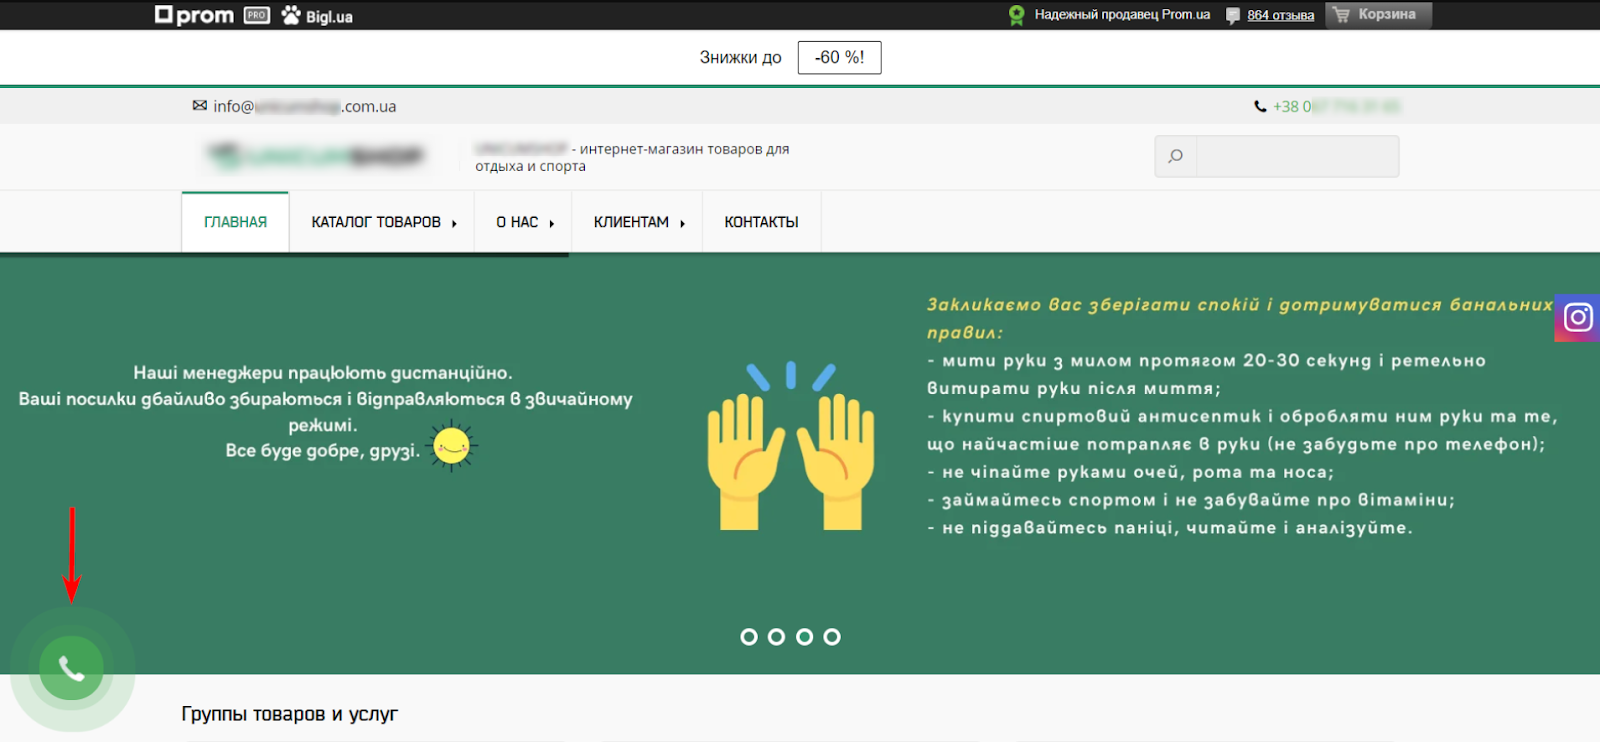 Omelyanenko.pro, віджет замовлення зворотнього дзвінку на сторінці клієнта